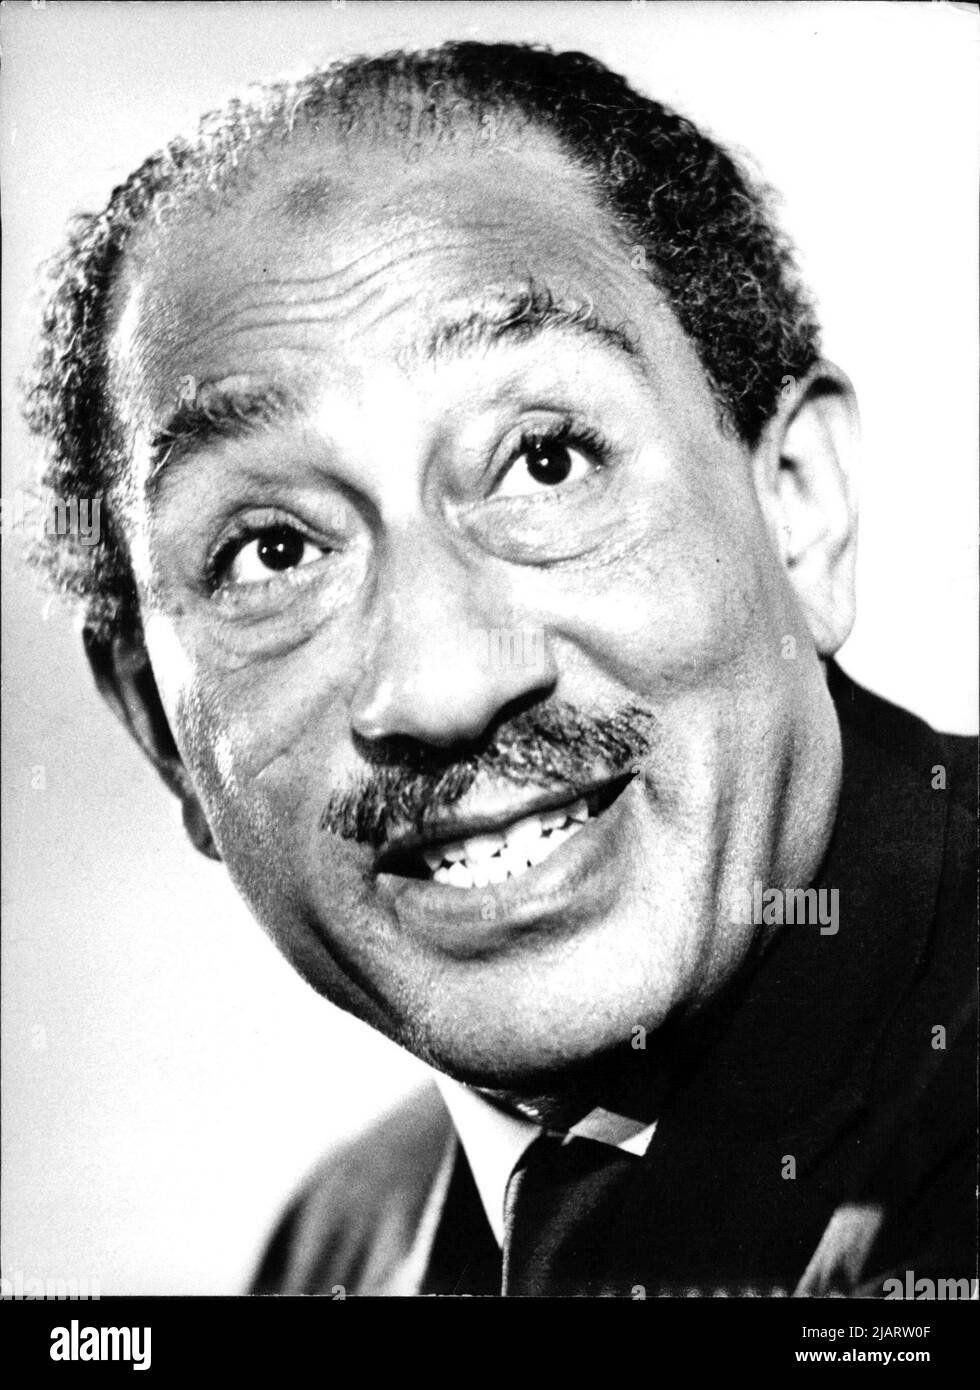 Mohammed Anwar el-Sadat, ägyptischer Staatspräsiden, im Amt von 1970 bis zu seiner Ermordung am 6.10.81. Er führte Ägypten in den Jom-Kippur-Krieg 1973, löste das Land aus der engen Bindung an die Sowjetunion und schloss 1979 einen Friedensvertrag mit Israel, wofür den Friedensnobelpreis erhielt. Stock Photo